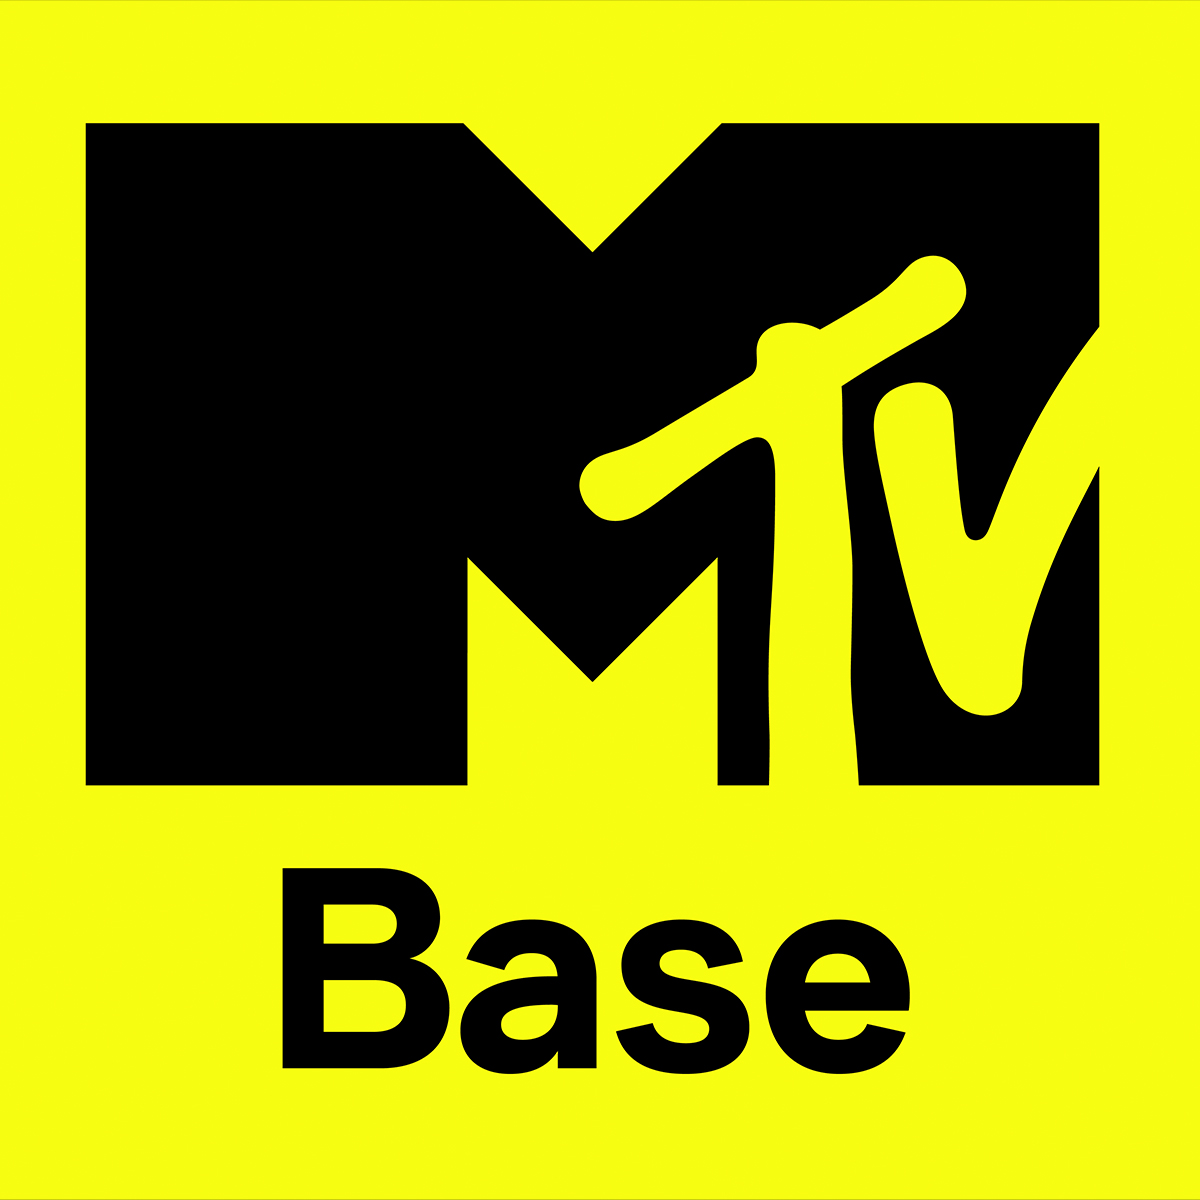 NEW MTV BASE LOGO